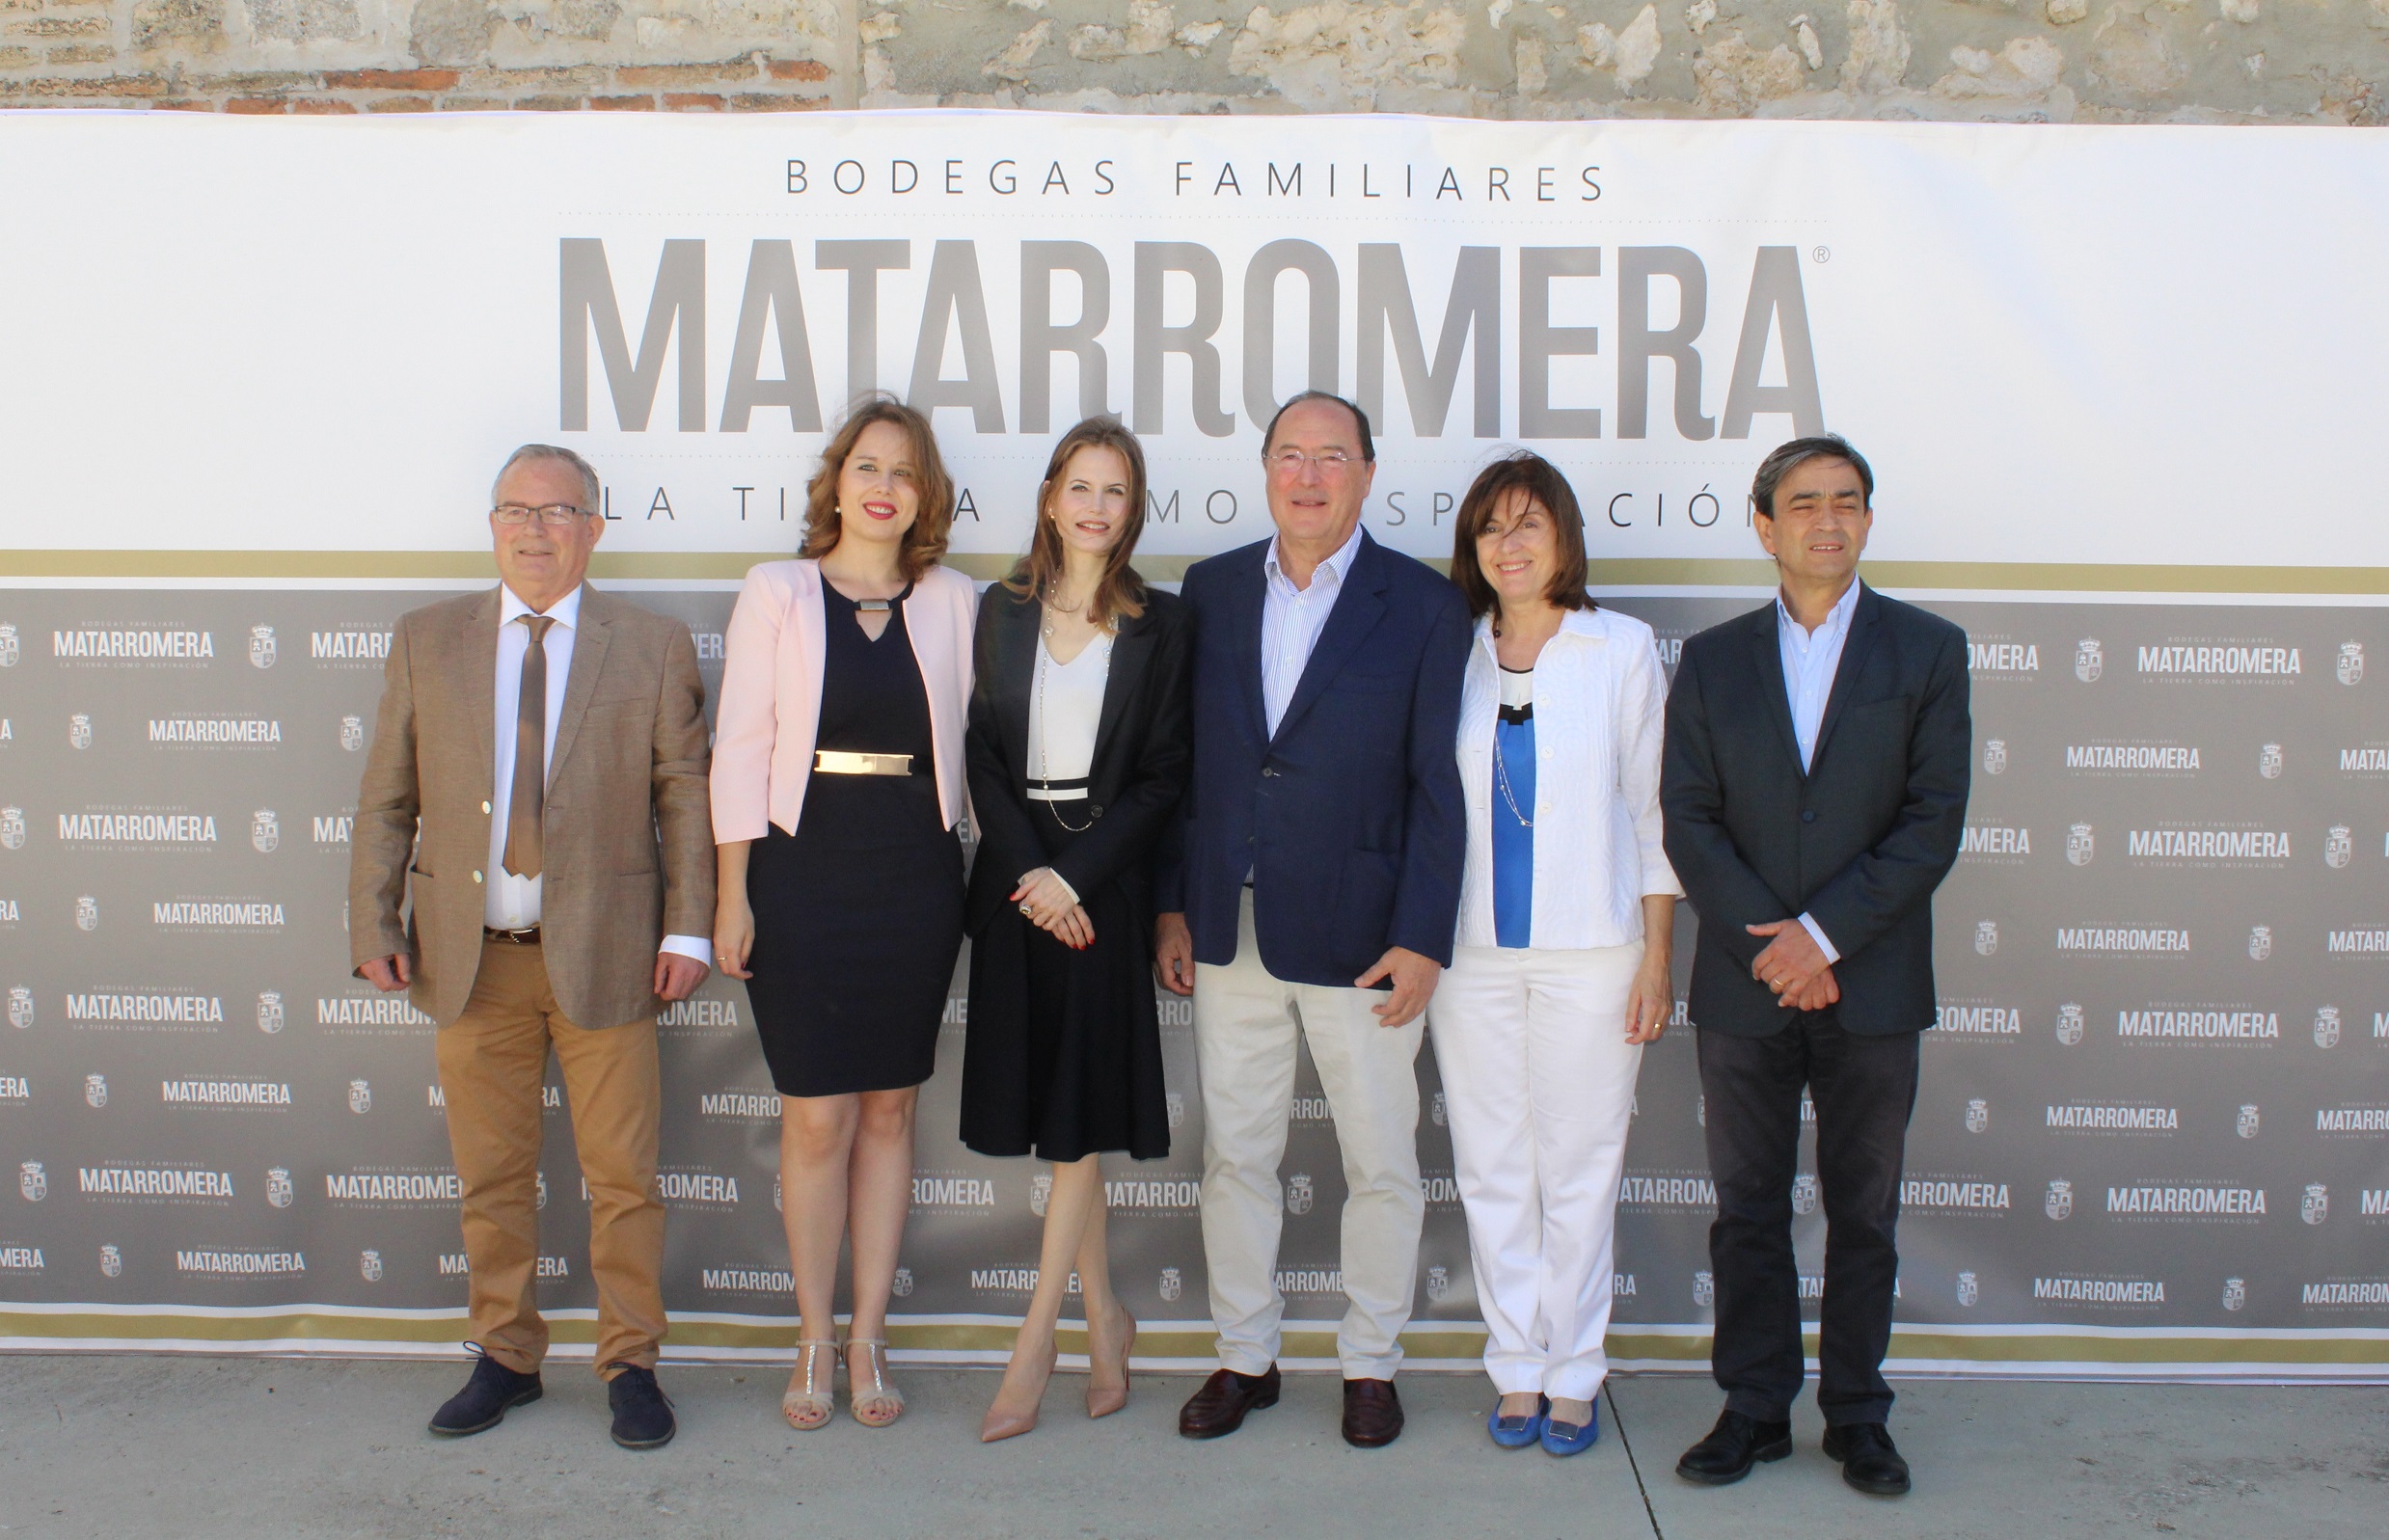 Matarromera awards its Gold Insignia to Inma Shara